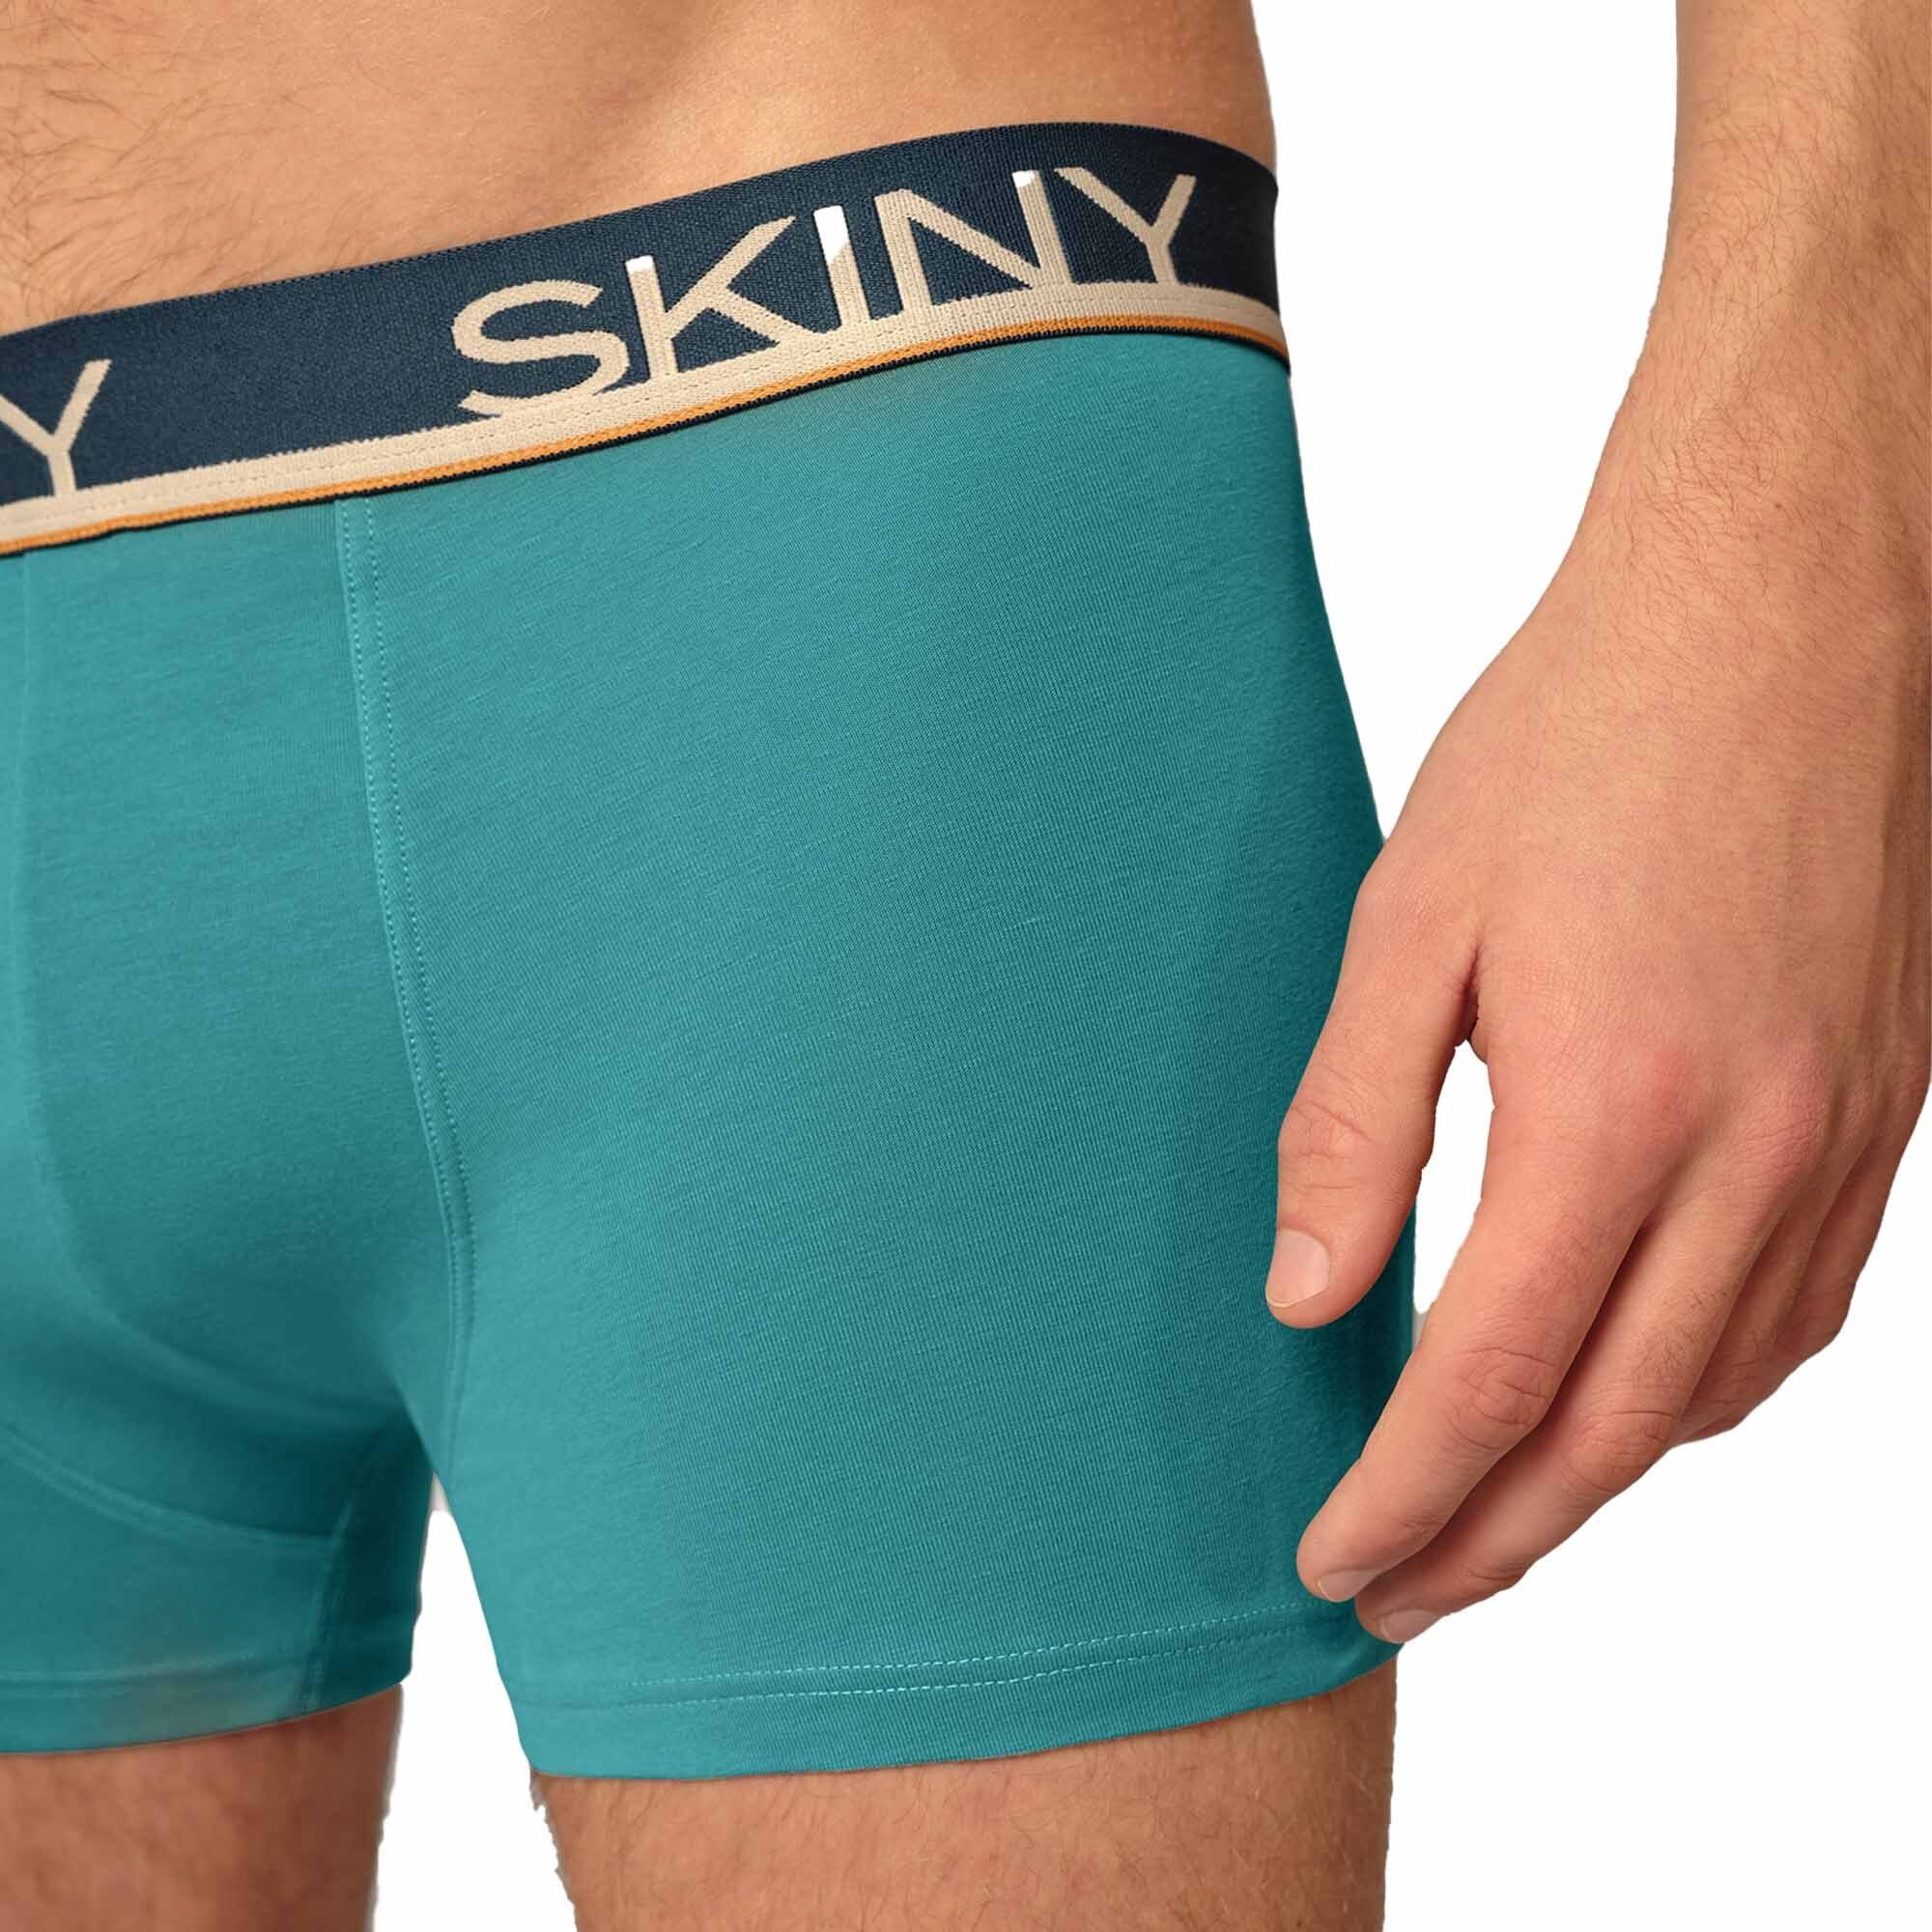 Blau/Türkis/Hellblau 3er Boxer Boxer Shorts Herren Pack Skiny Trunks, - Pants